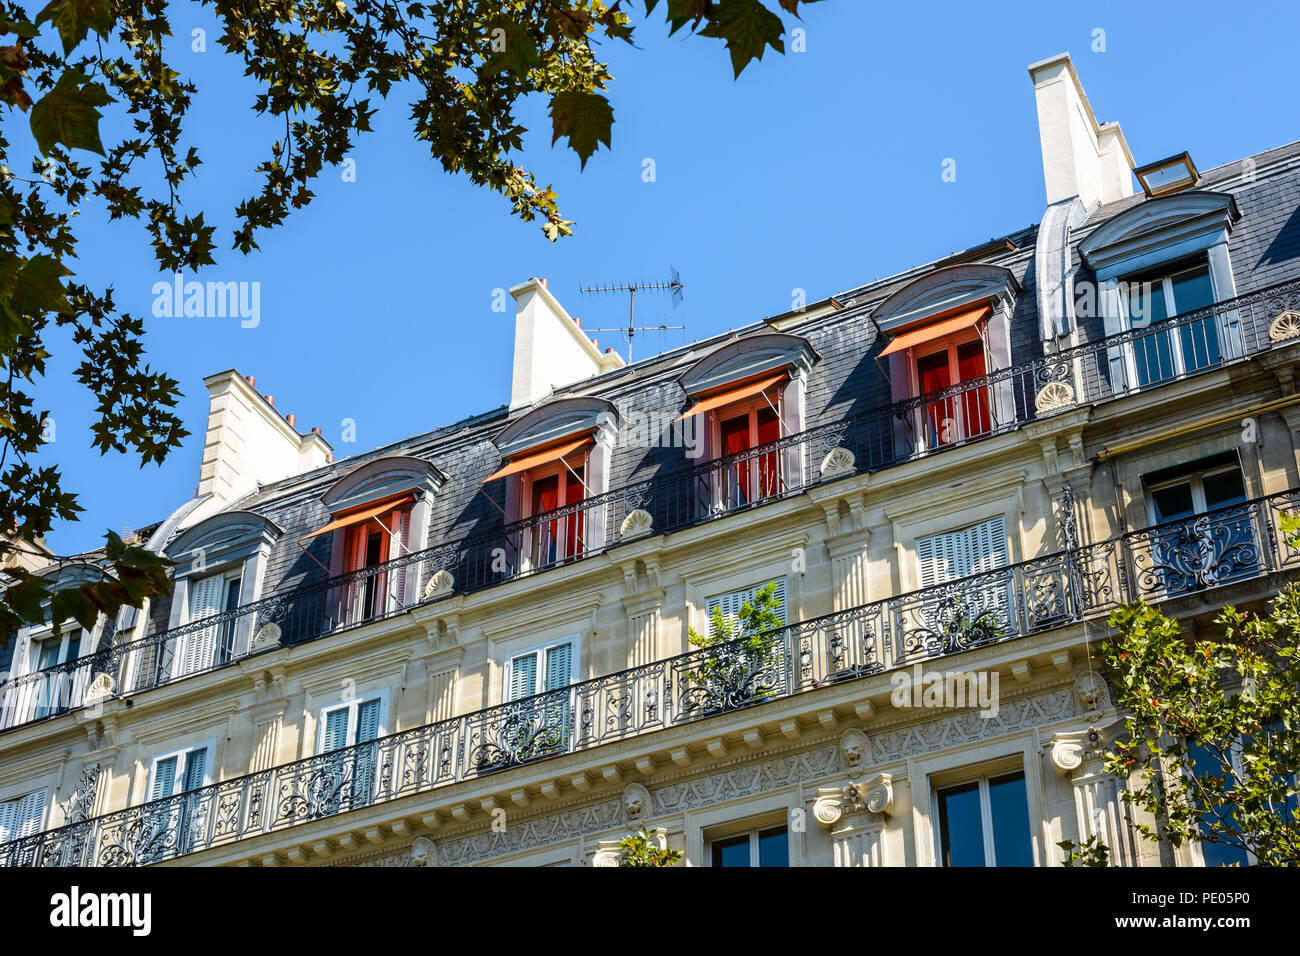 Vue depuis la rue d'un immeuble typiquement parisien, l'immeuble opulent de style haussmannien avec façade en pierre, ornements sculptés et d'un balcon. Banque D'Images